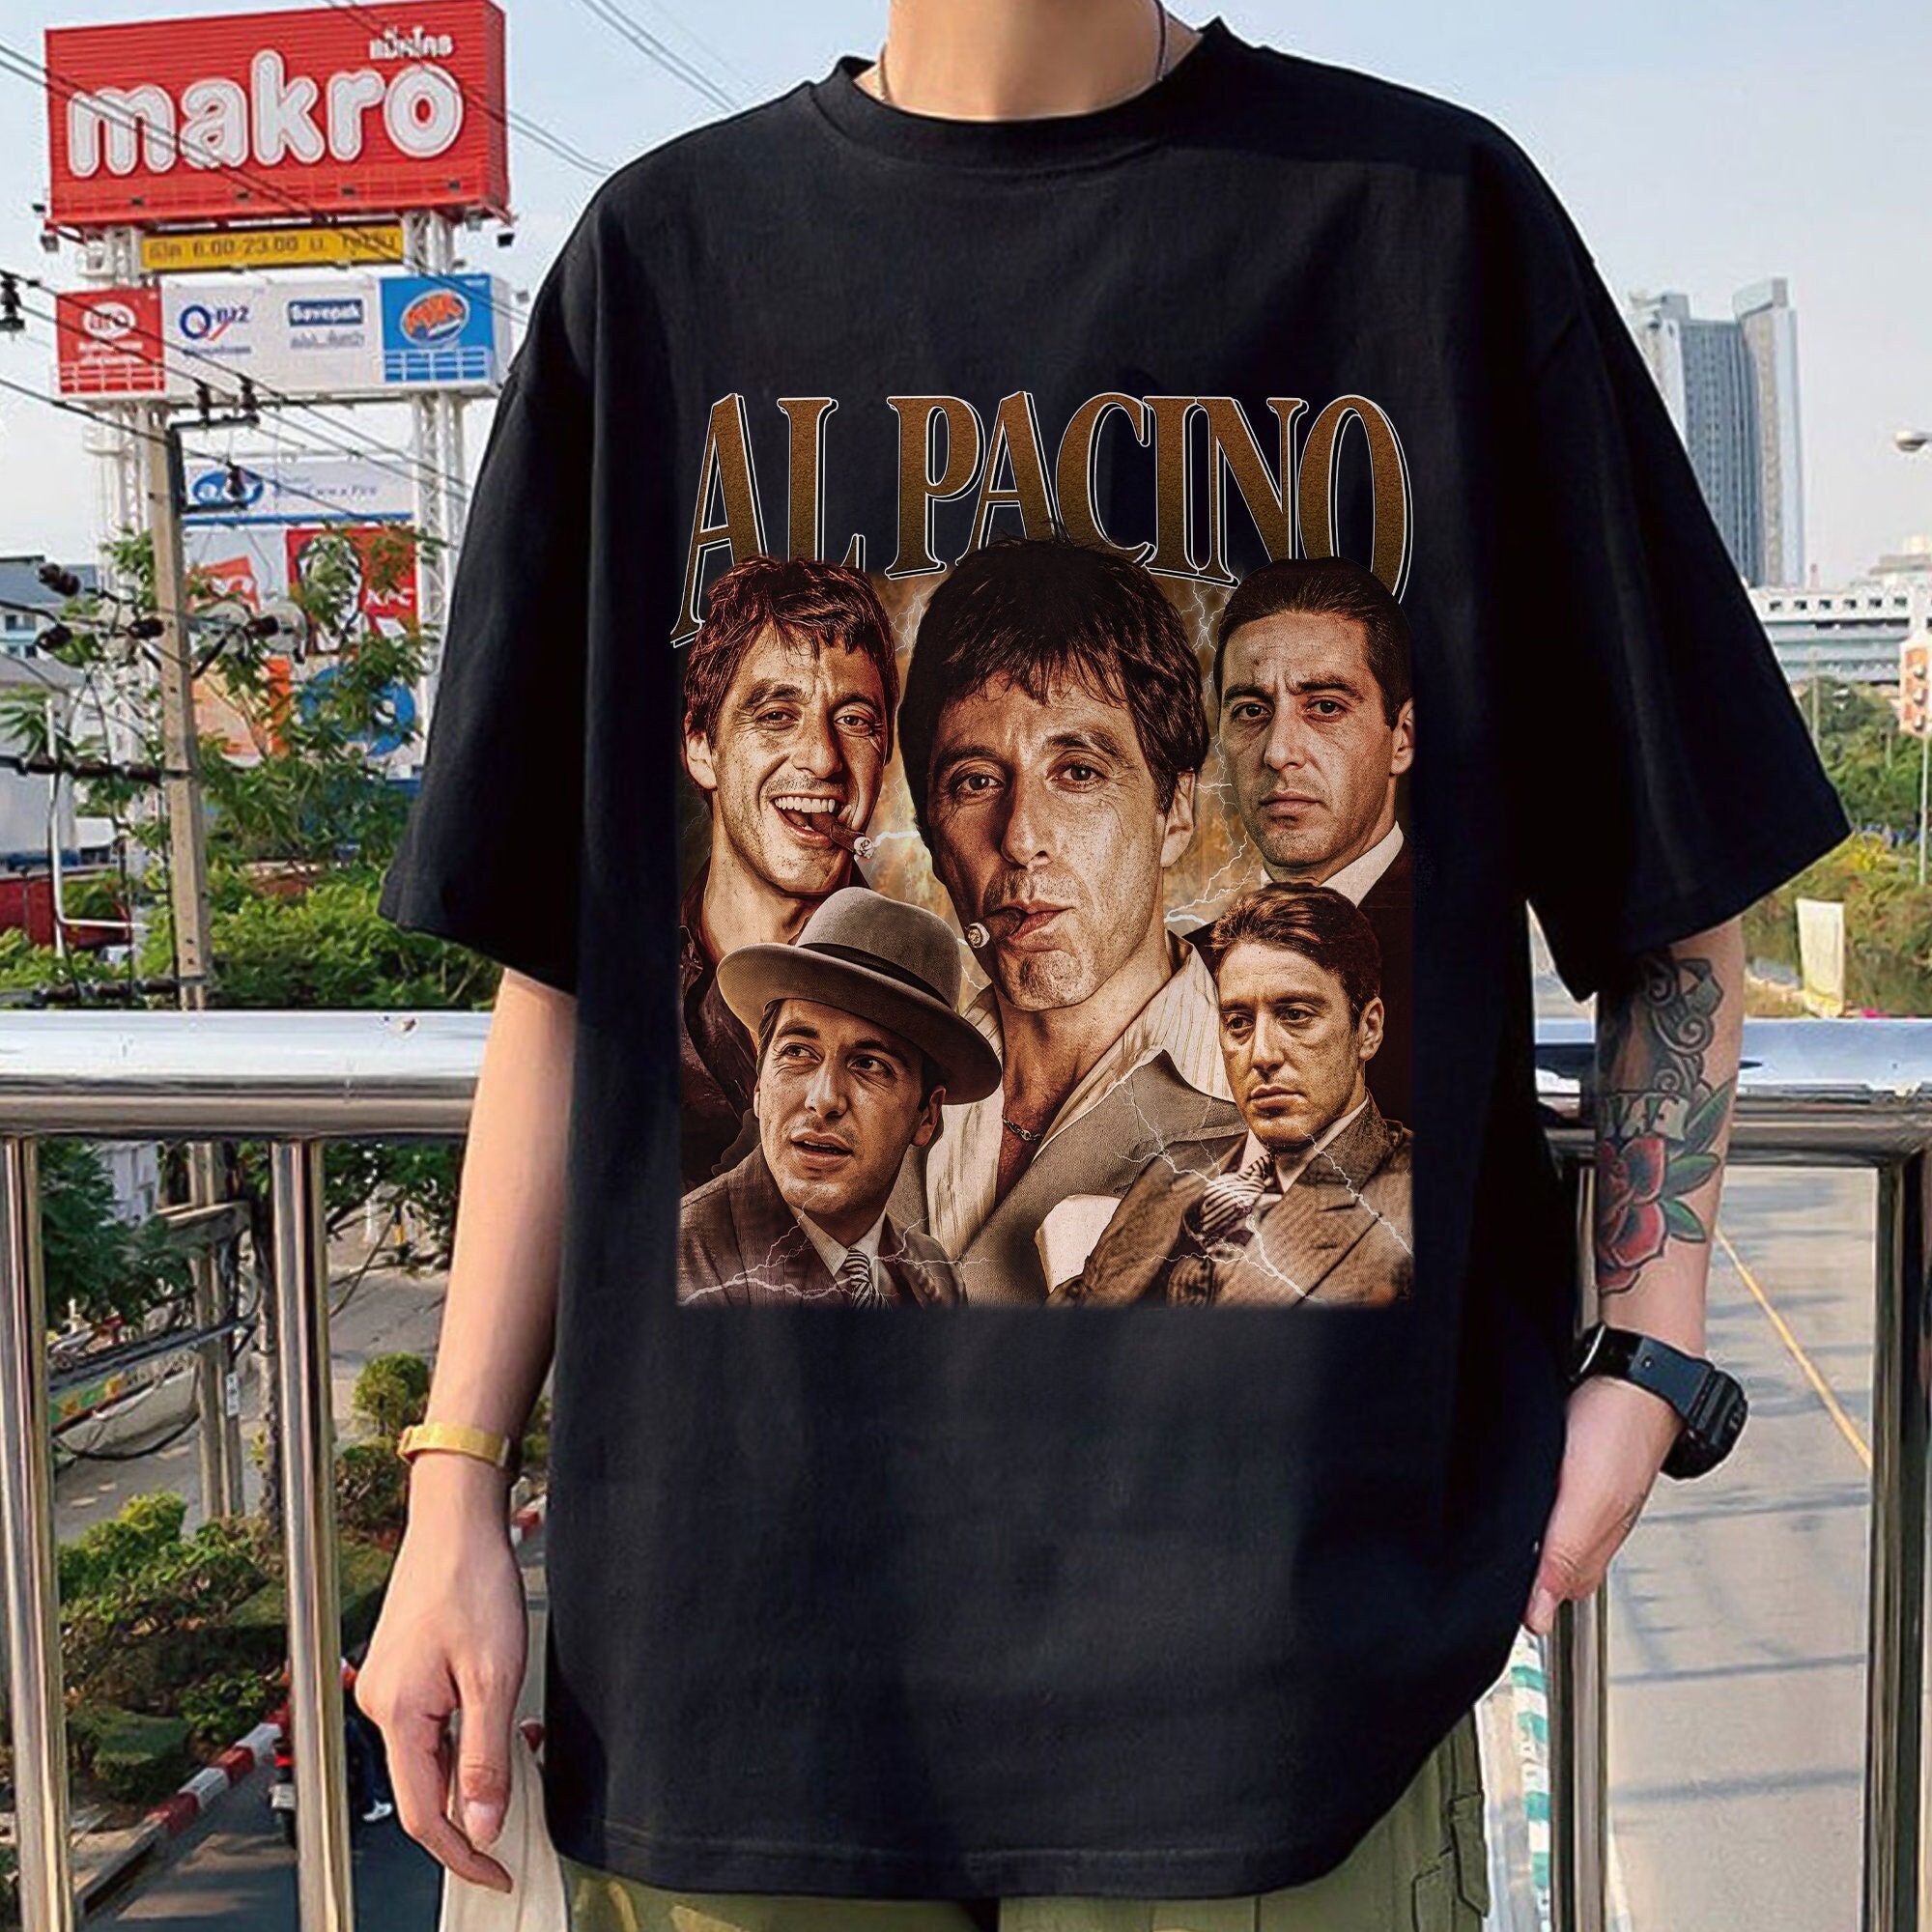 Heat Pacino De Niro 1995 Movie T-Shirt Tee Shirt 1013